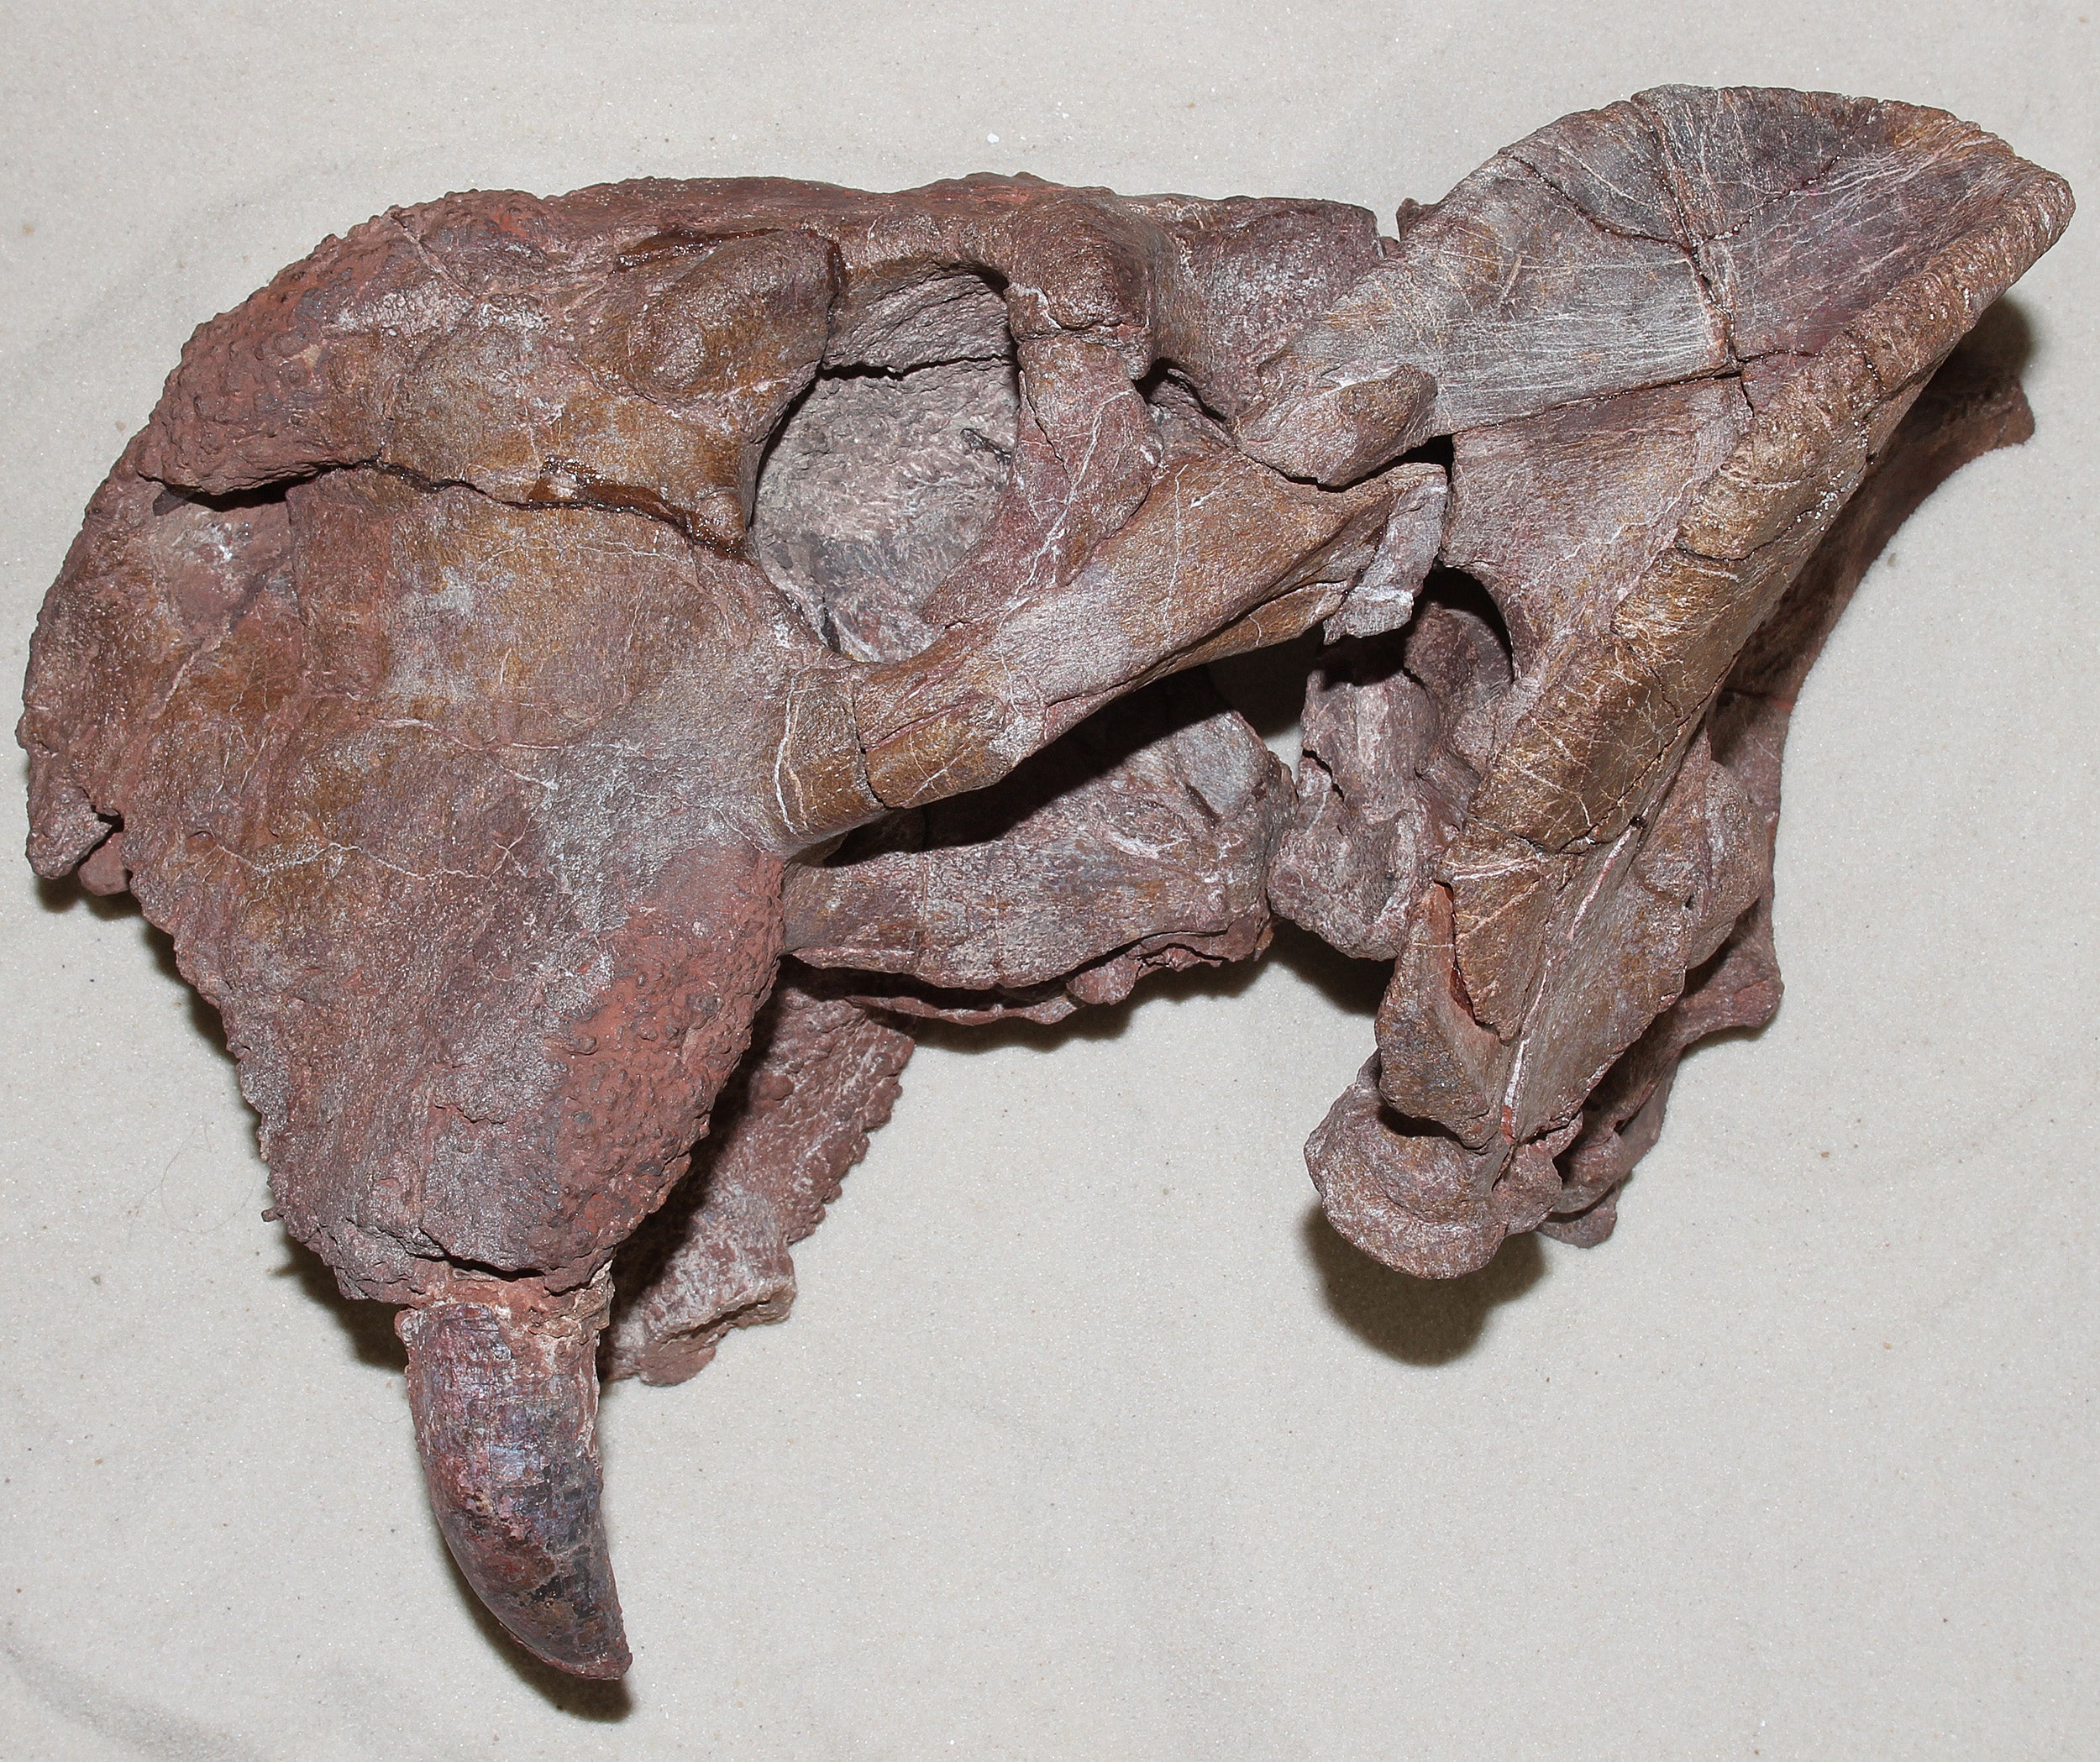 dicynodont Dolichuranus skull.